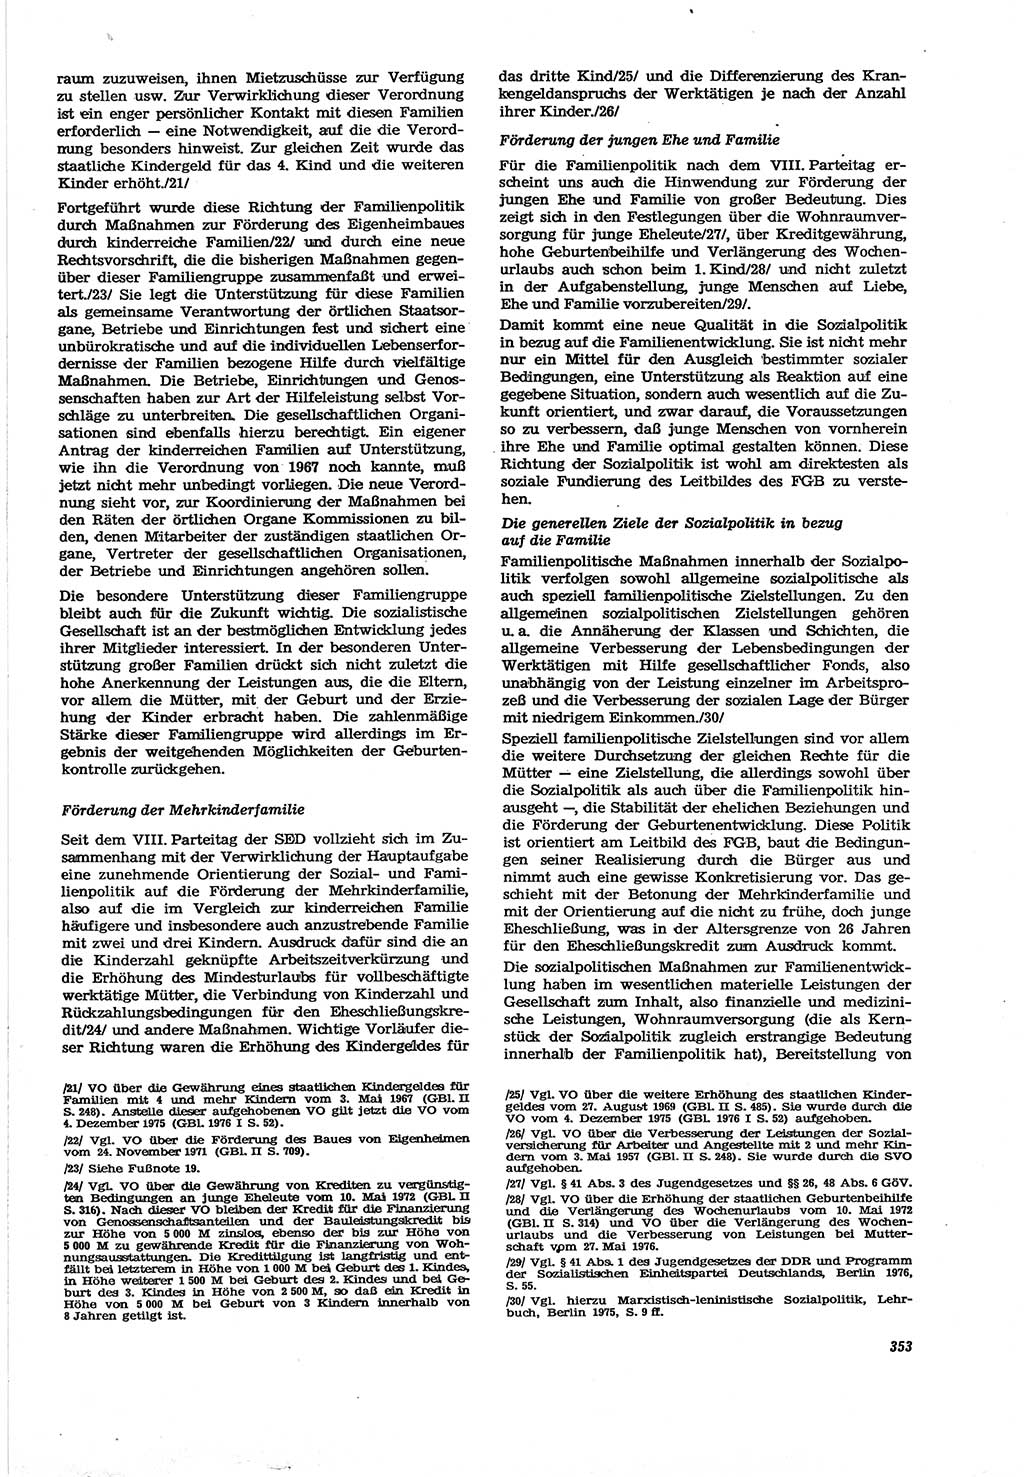 Neue Justiz (NJ), Zeitschrift für Recht und Rechtswissenschaft [Deutsche Demokratische Republik (DDR)], 30. Jahrgang 1976, Seite 353 (NJ DDR 1976, S. 353)